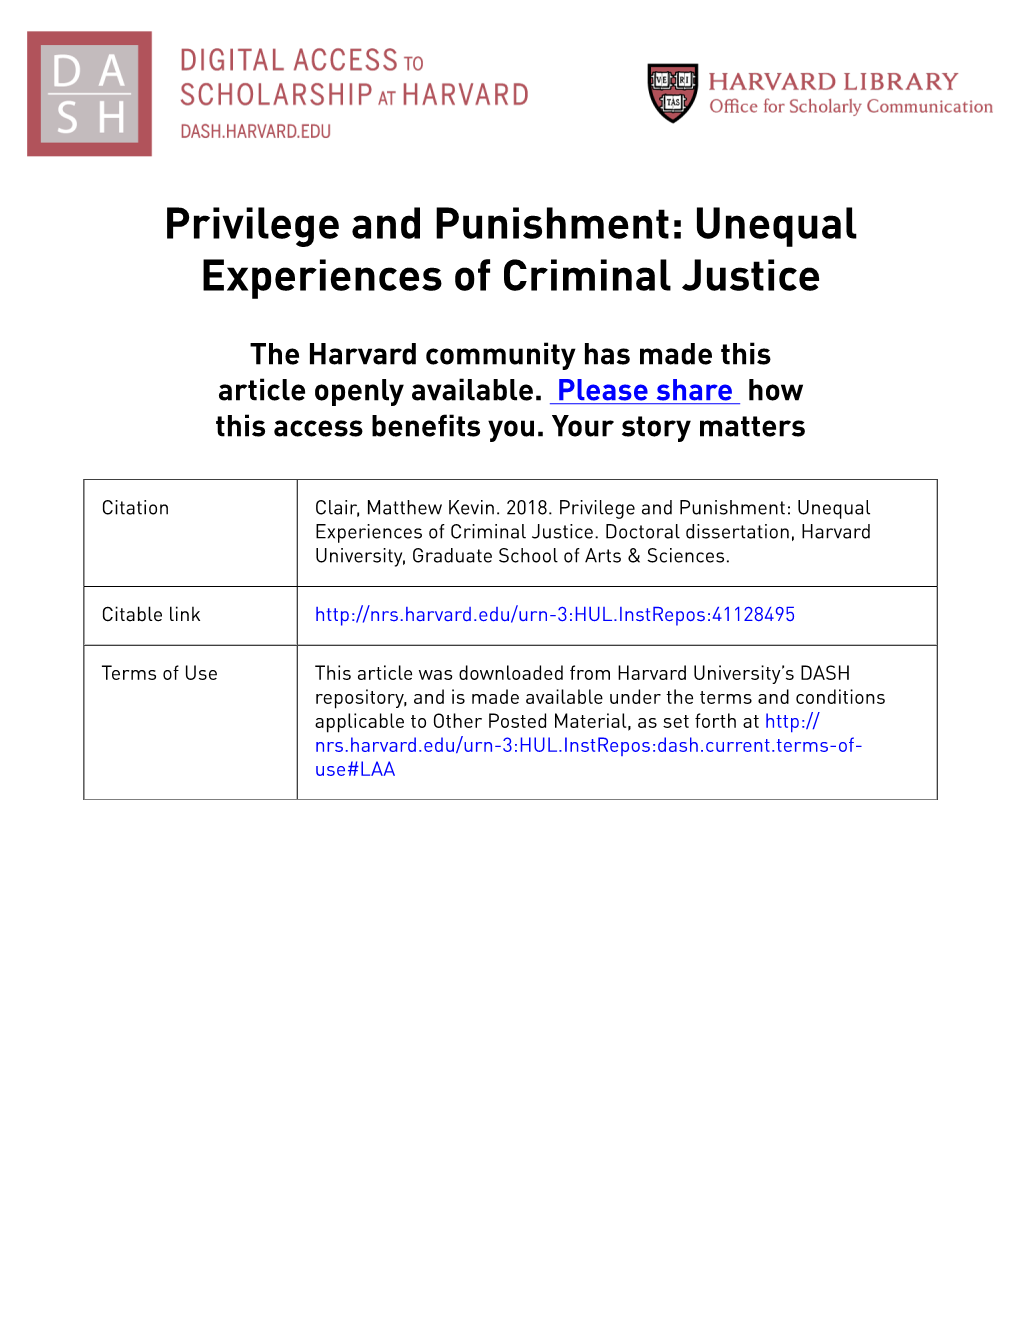 Privilege and Punishment: Unequal Experiences of Criminal Justice